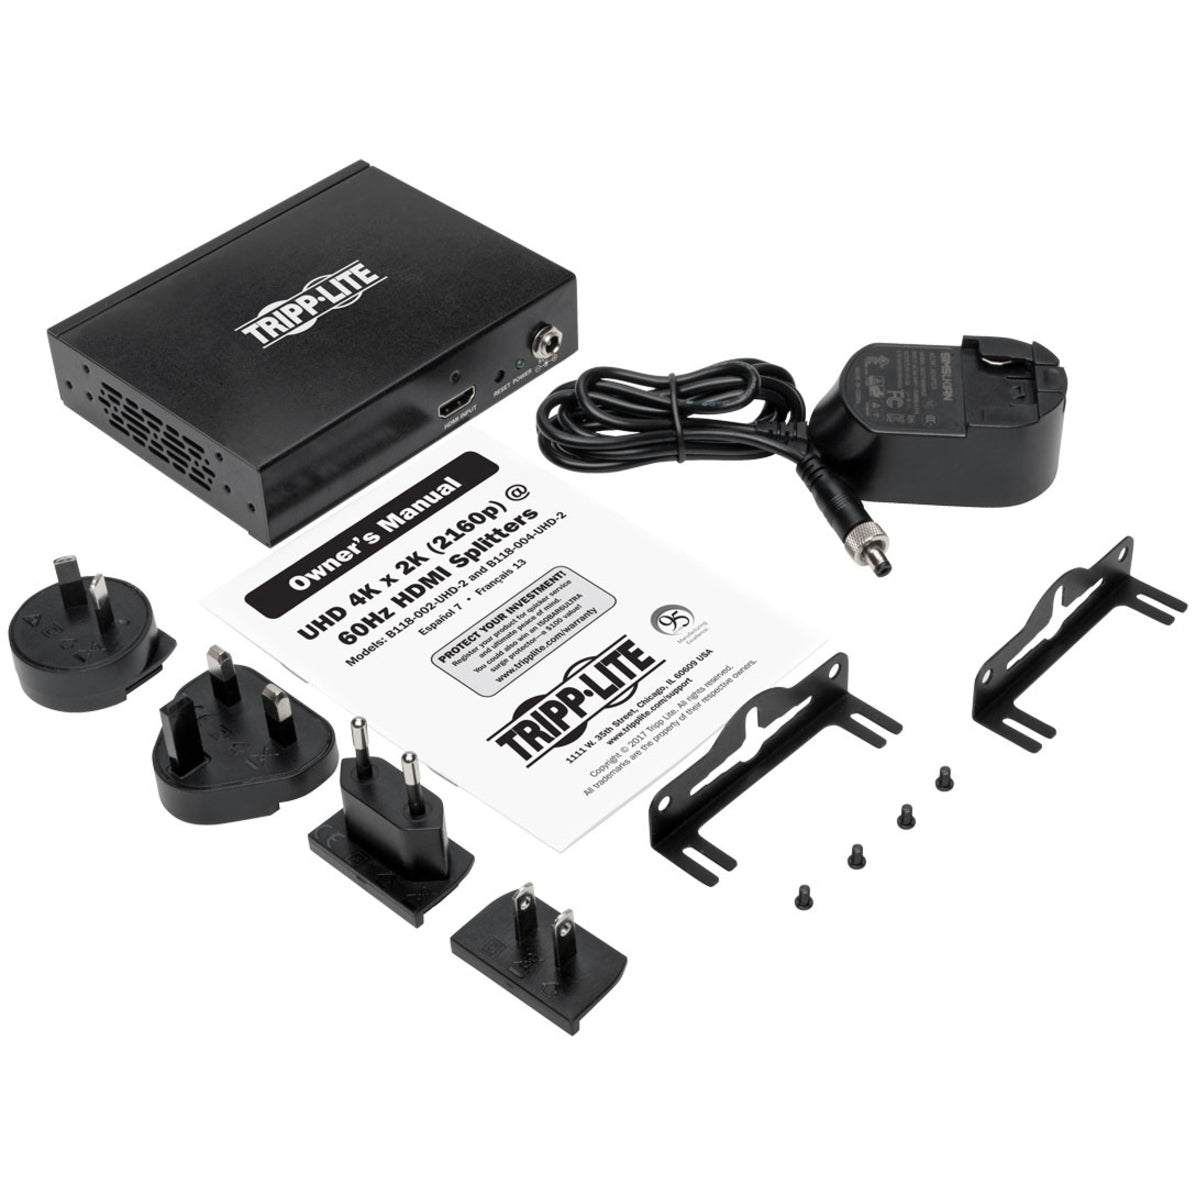 Tripp Lite B118-004-UHD-2 4-Port 4K 3D HDMI Splitter, Ultra-HD, Black